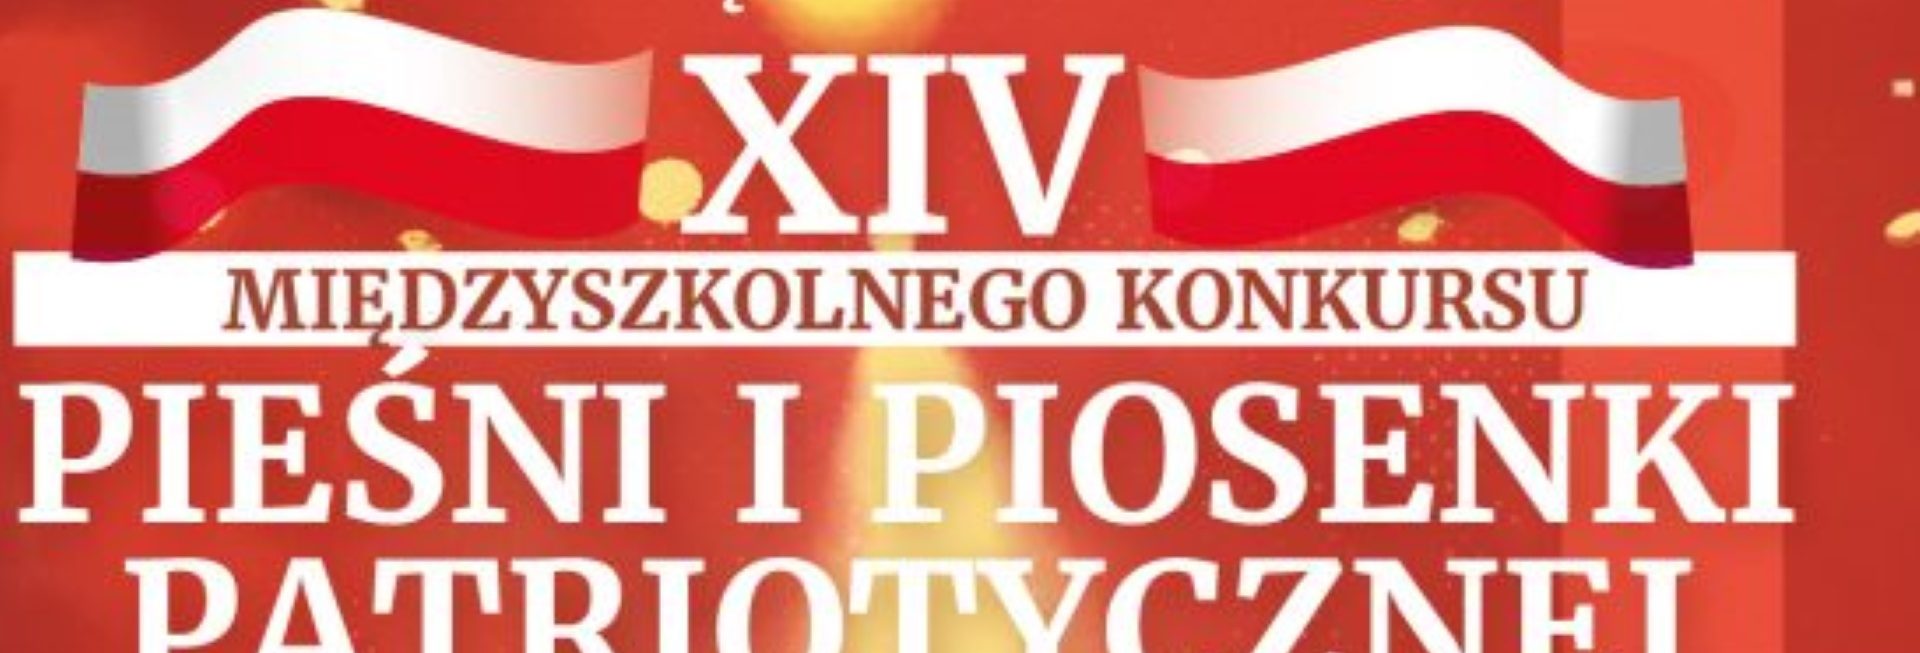 Plakat zapraszający do Biskupca na 14. edycję Koncertu Międzyszkolnego Konkursu Pieśni i Piosenek Patriotycznych Biskupiec 2022.